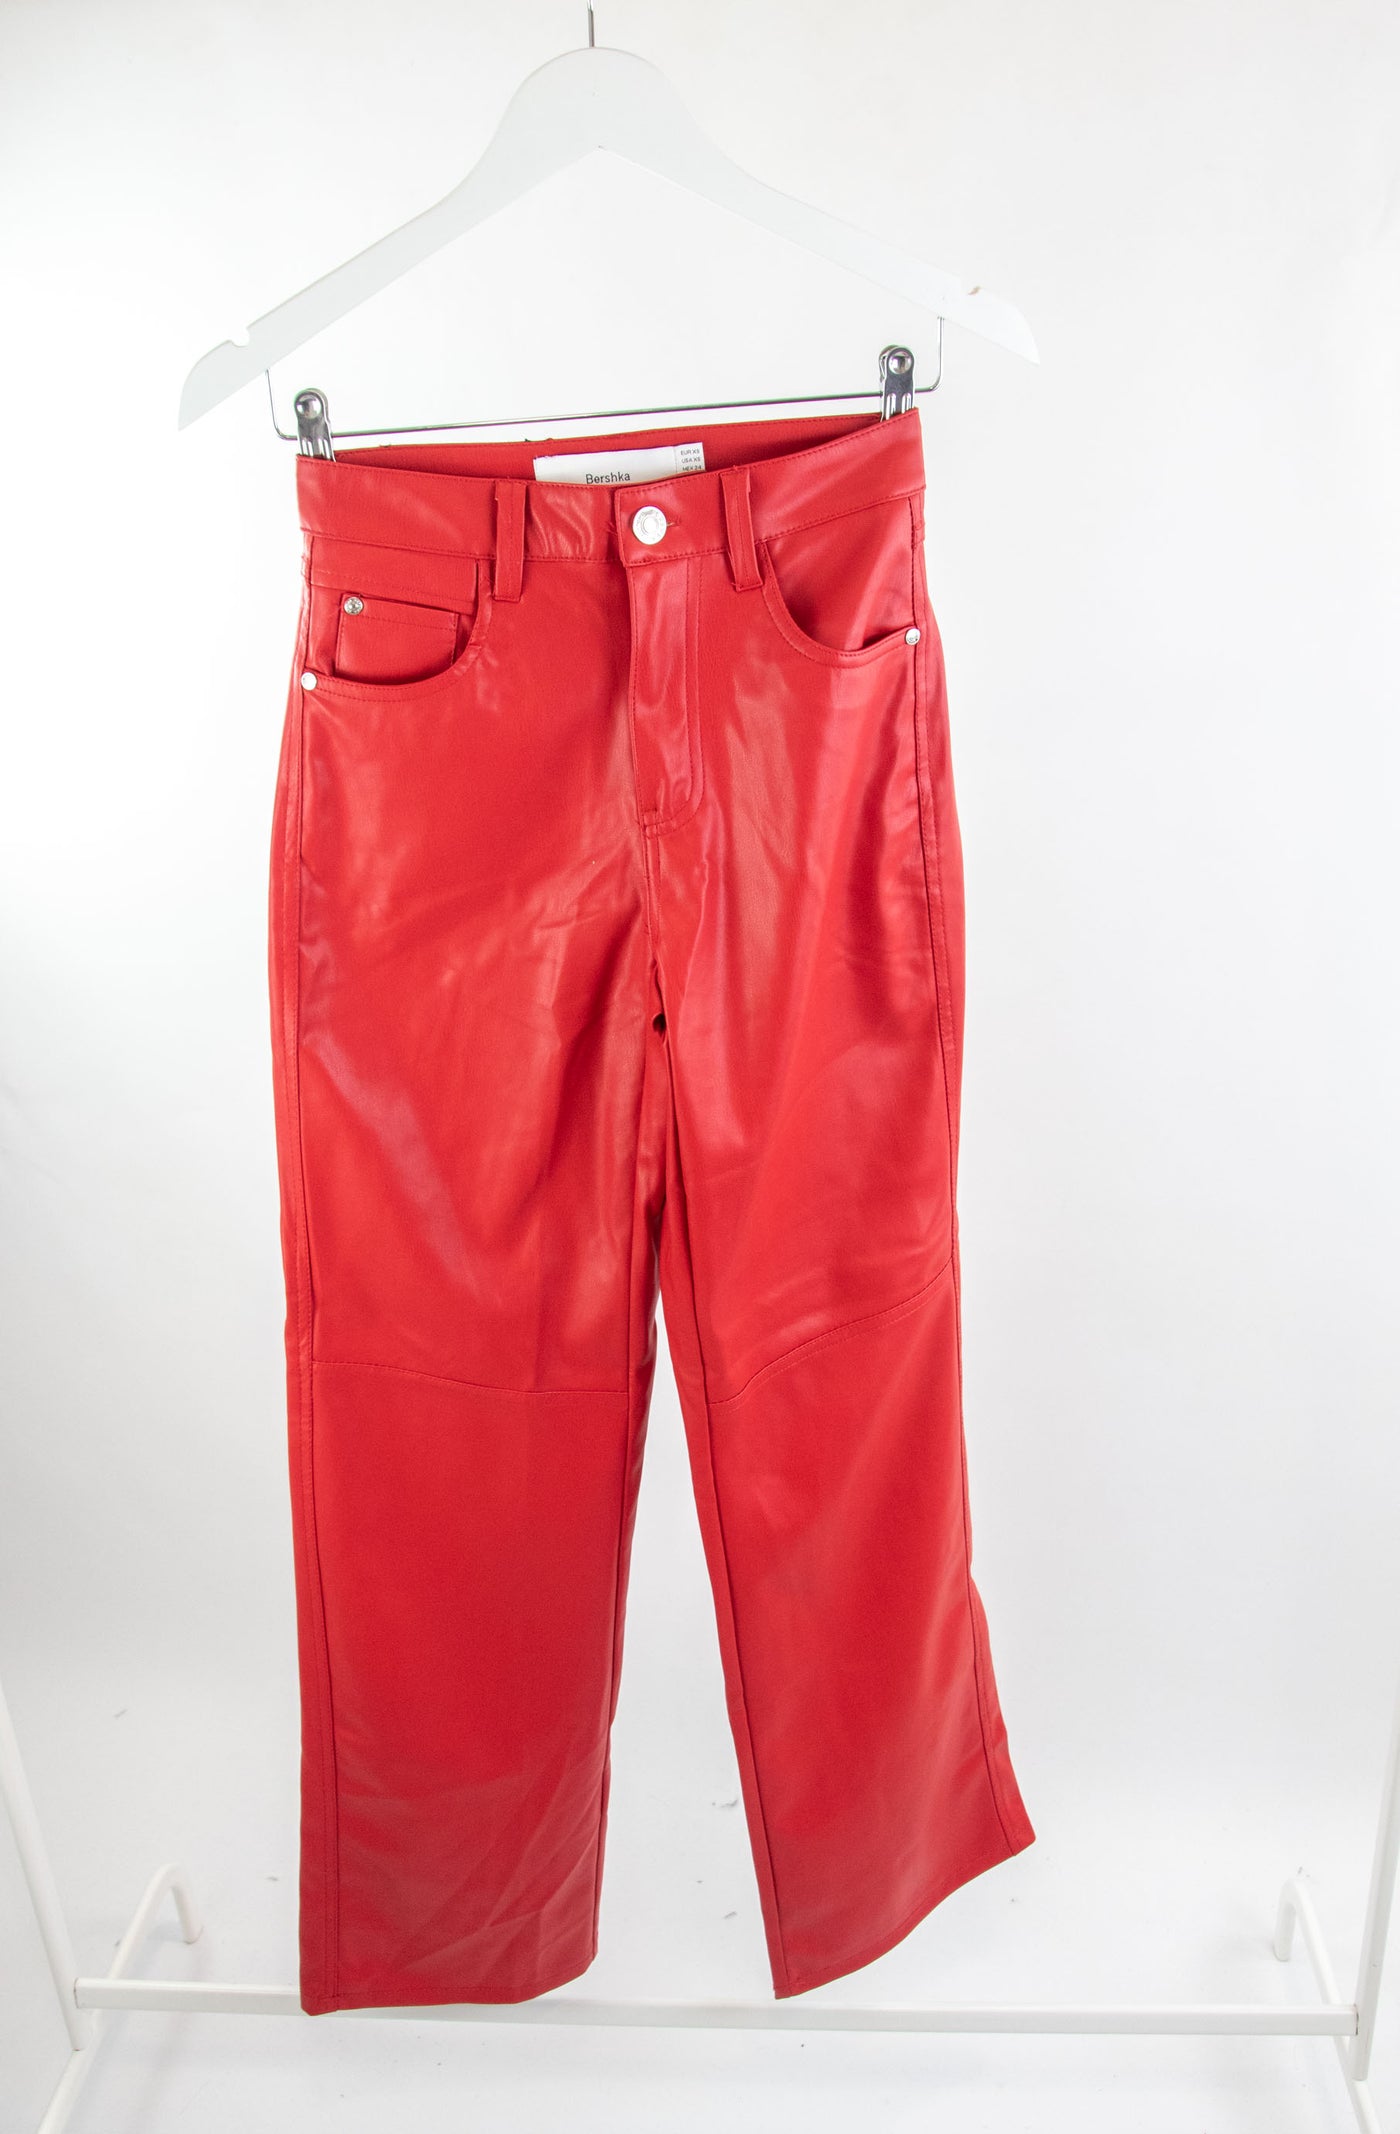 Pantalón rojo efecto piel